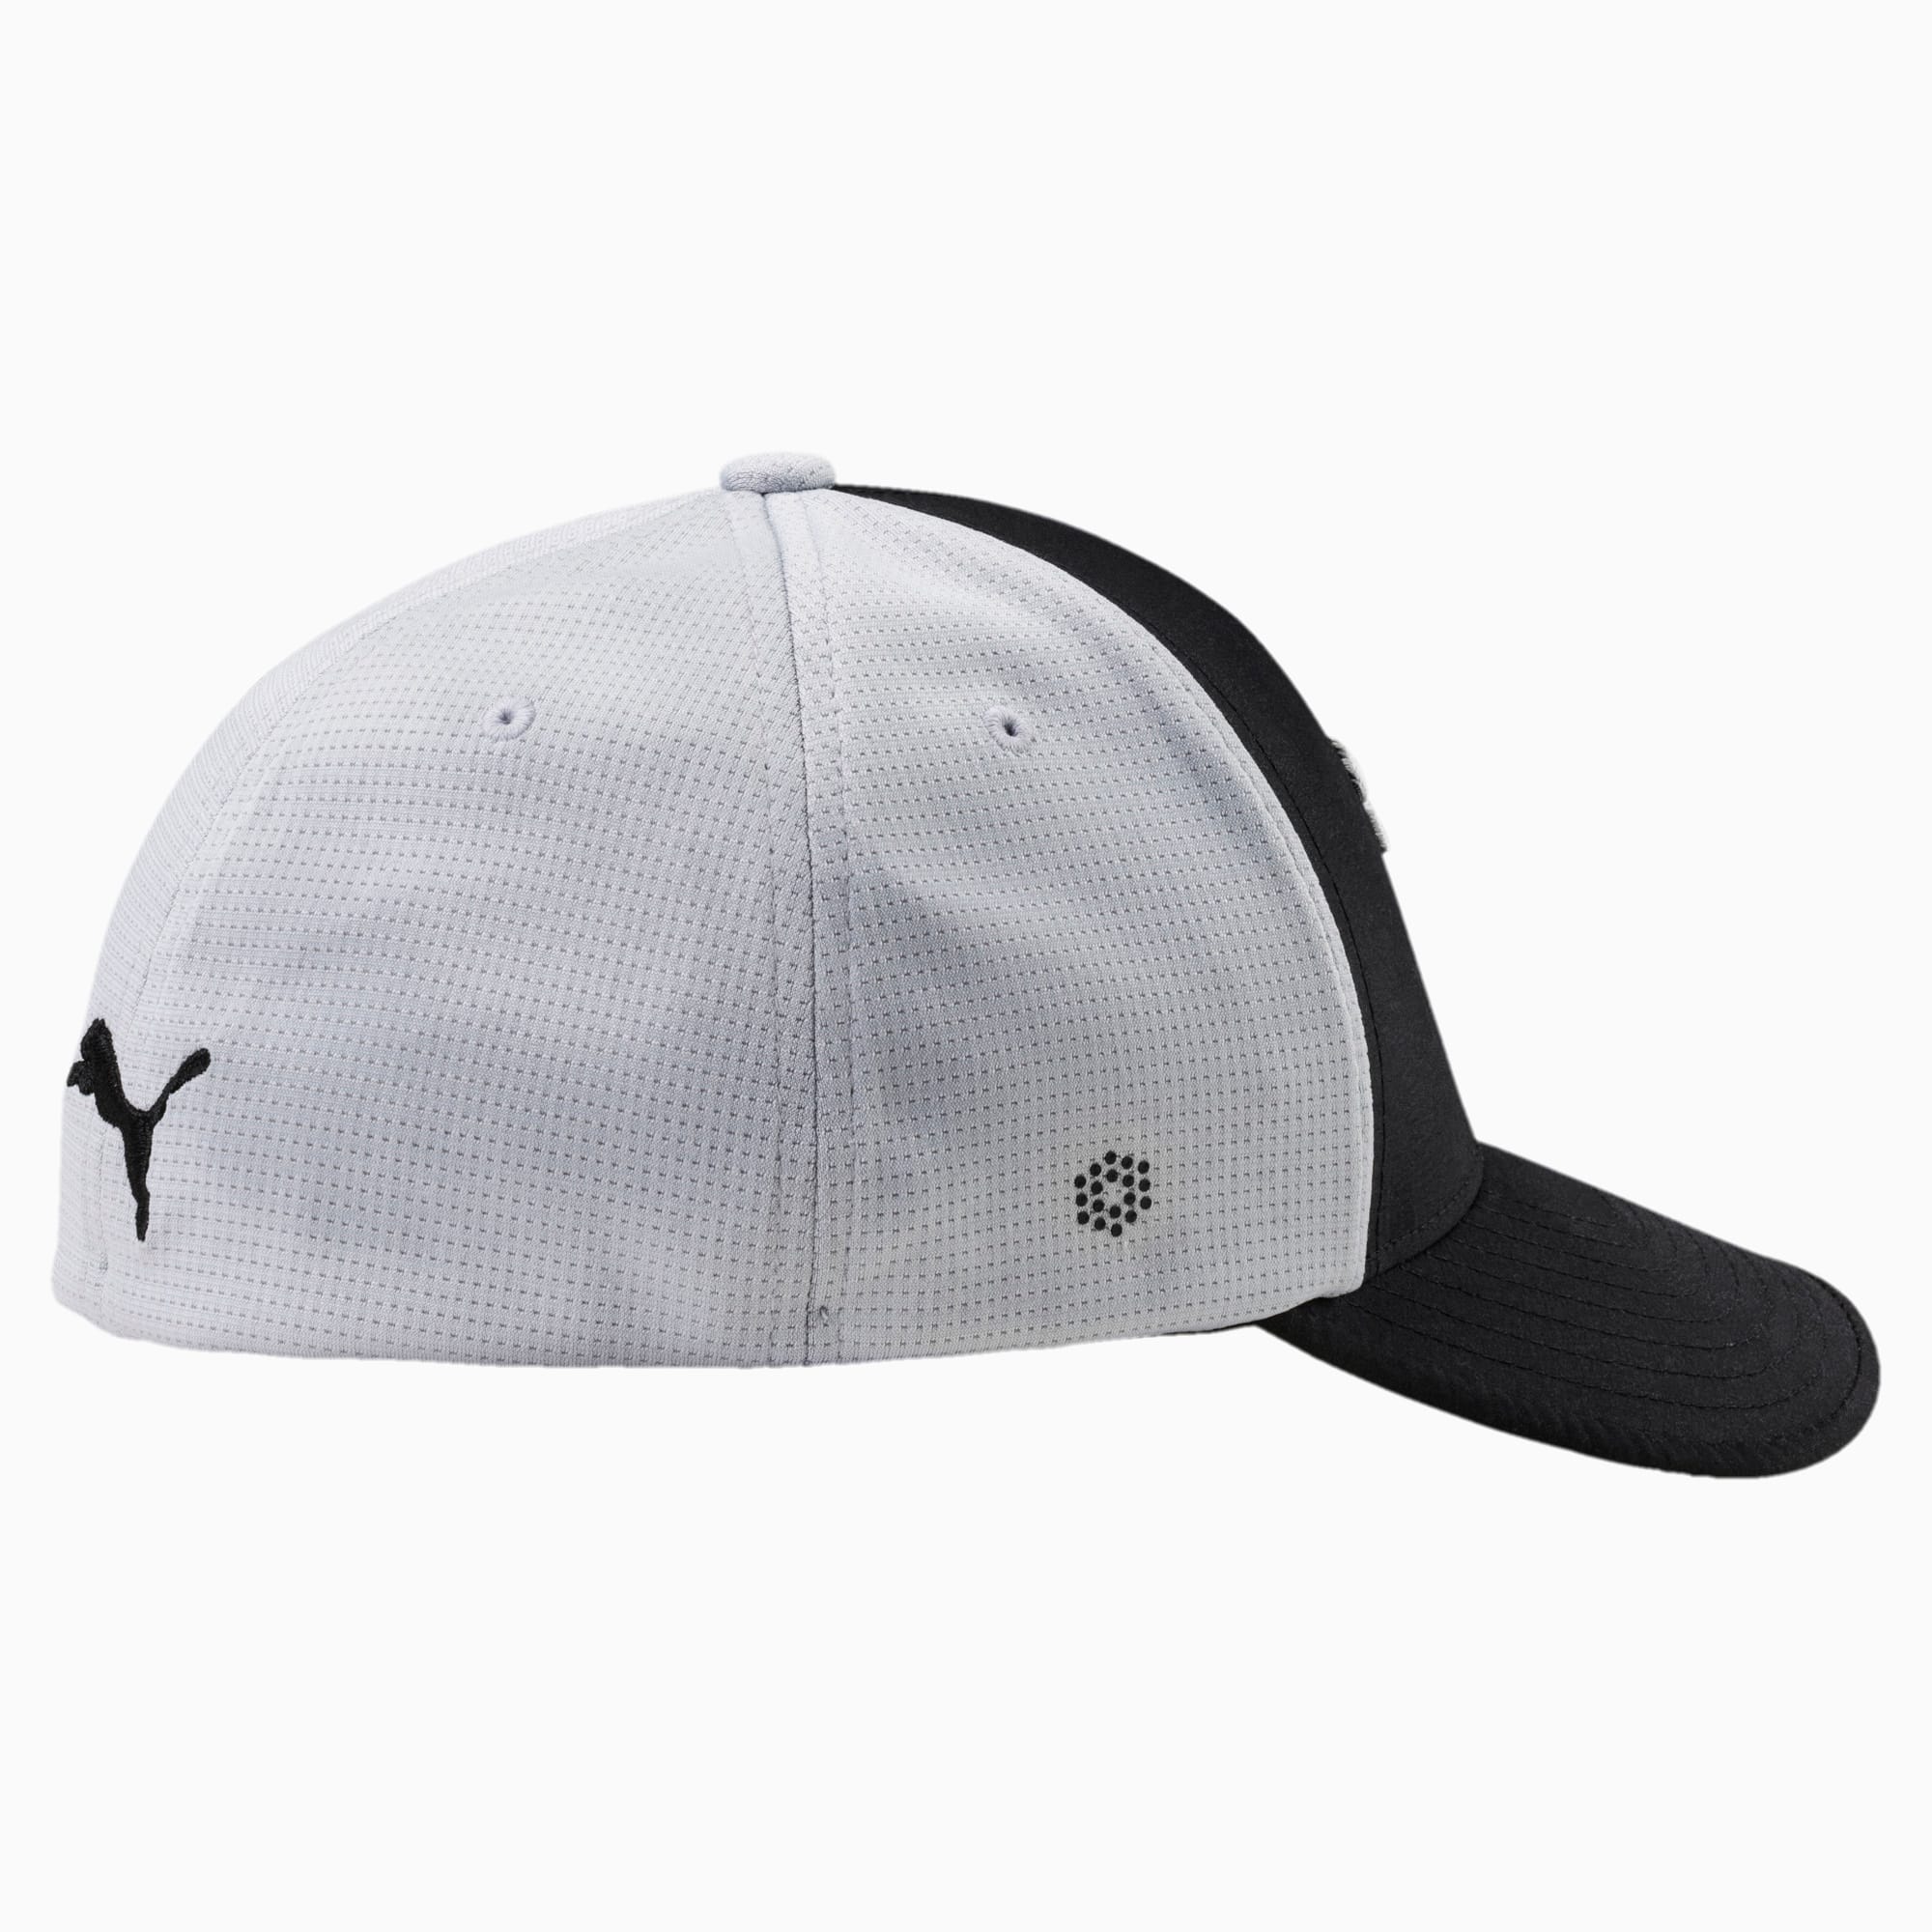 beliebte Marken Front 9 Flexfit Golf Hat | PUMA